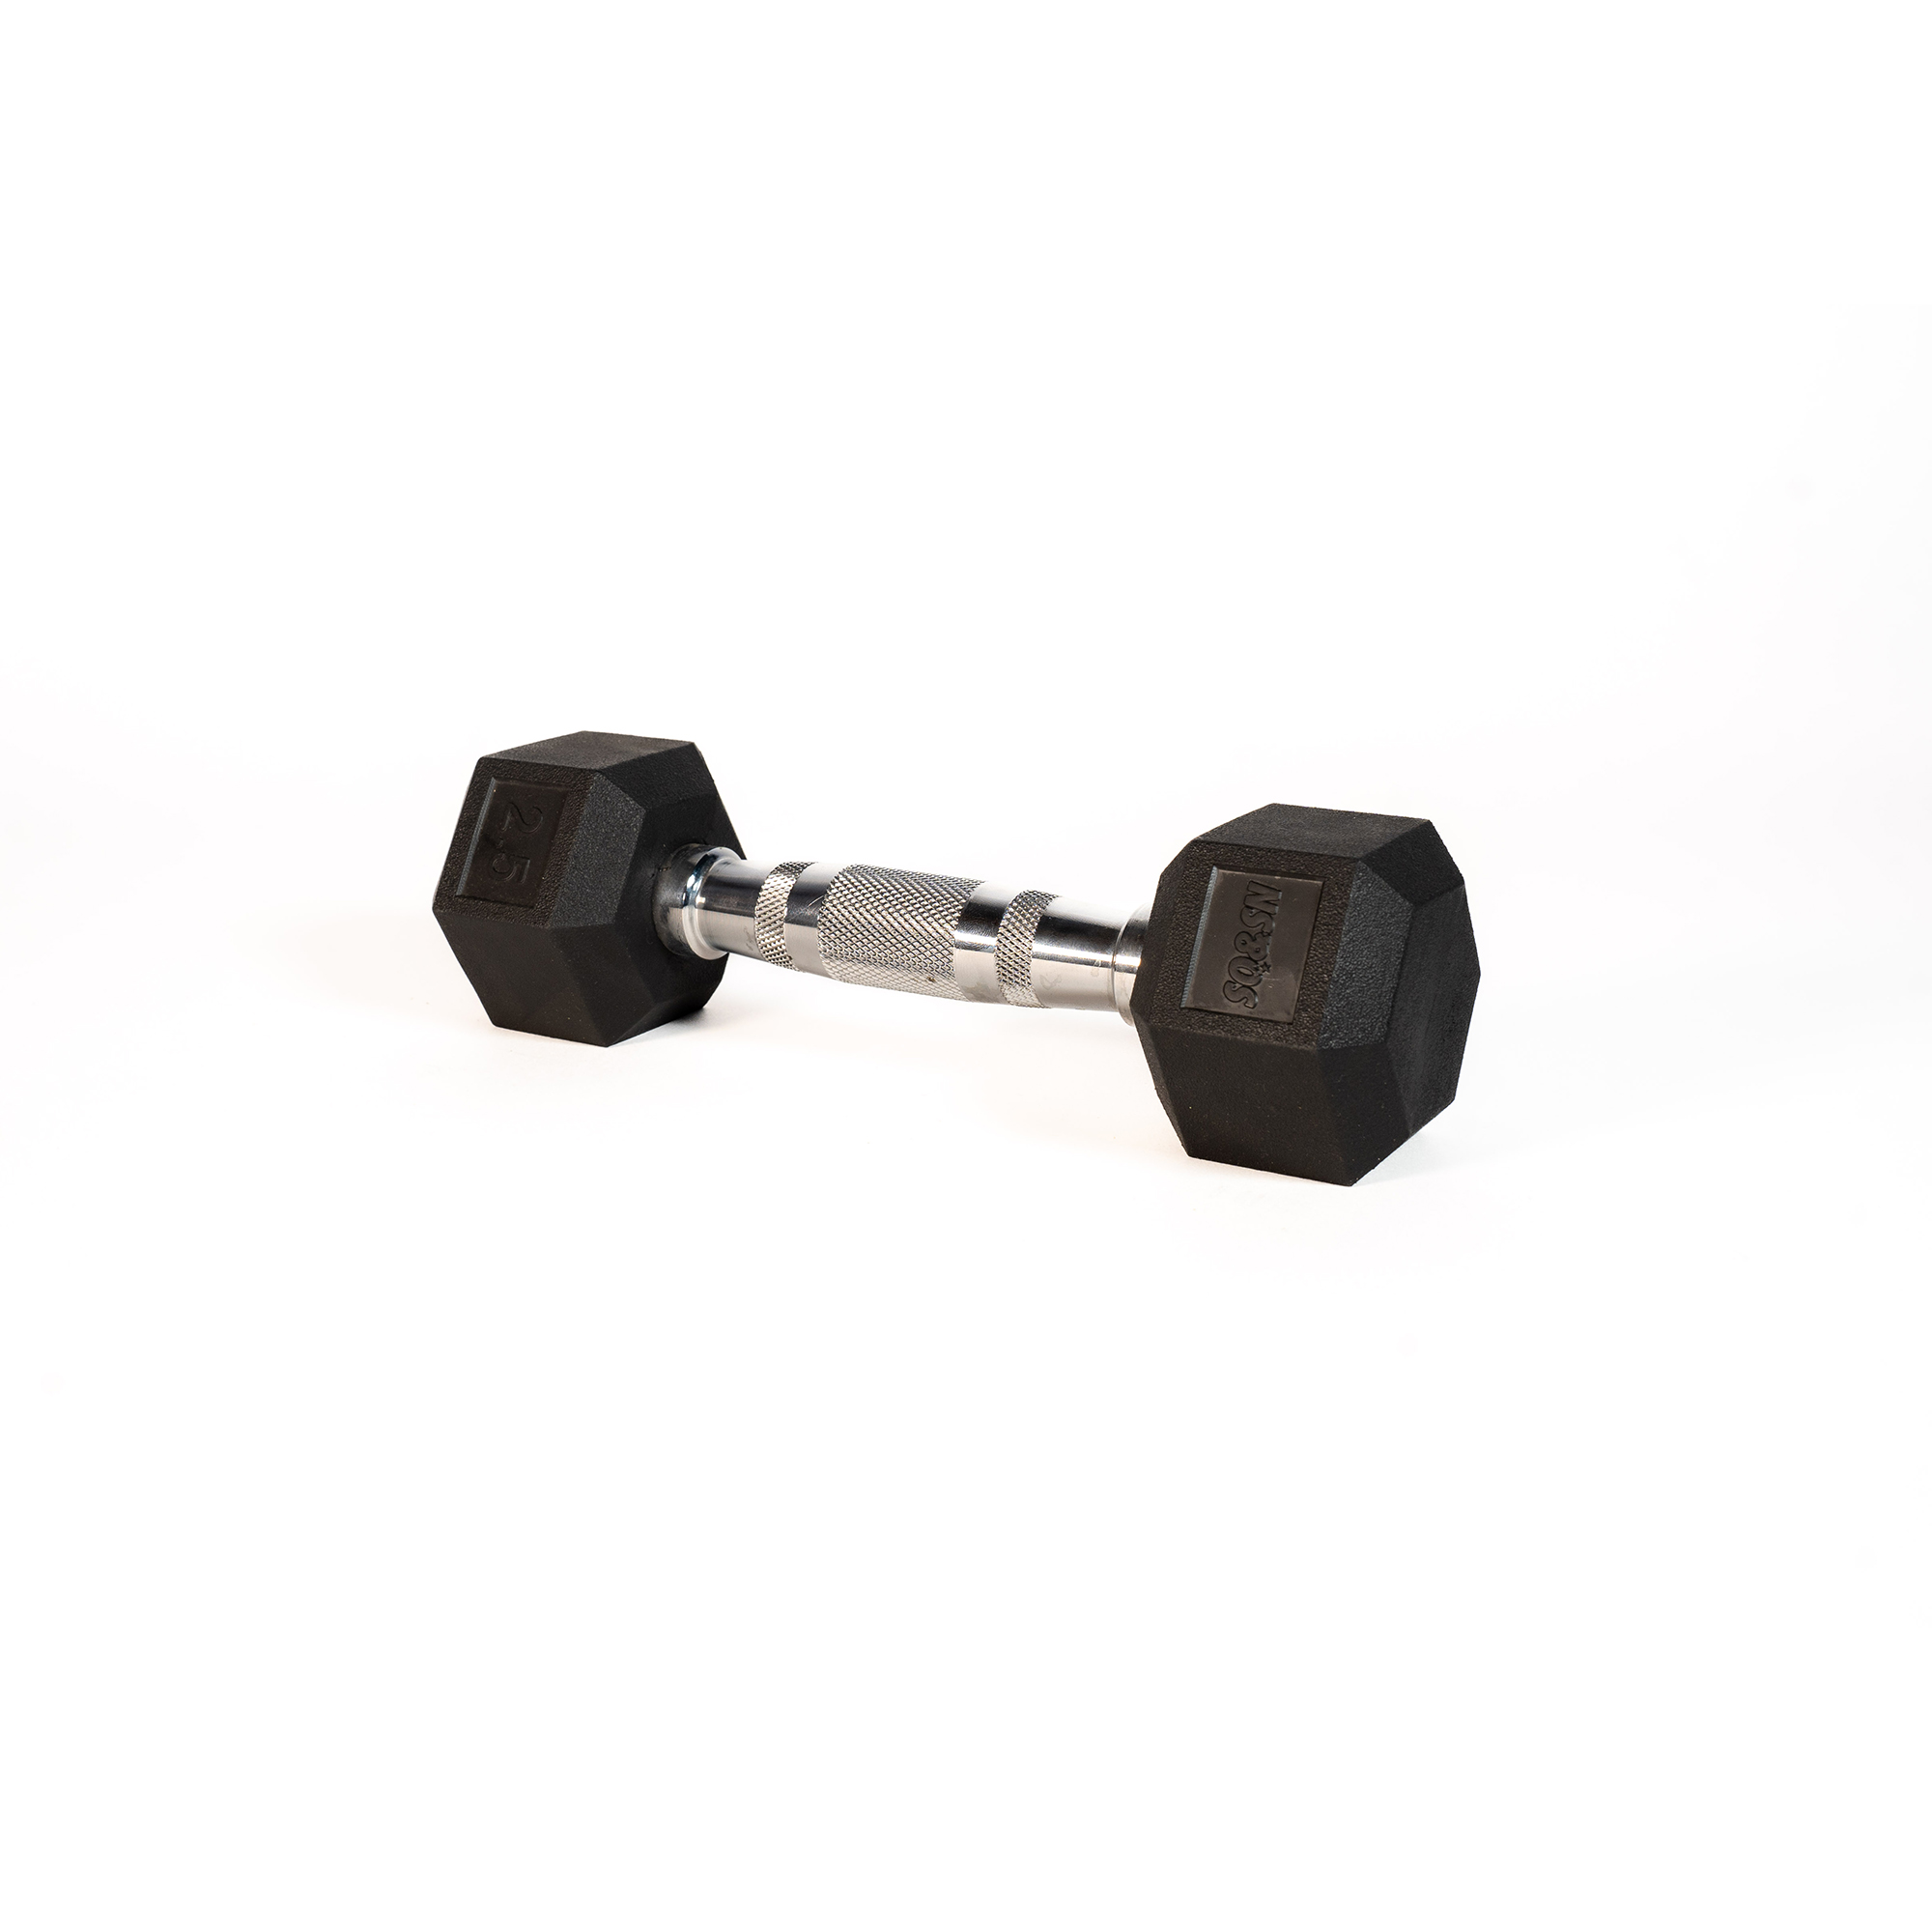 Brug SQ&SN Hexagon Håndvægt (2,5 kg) med forkromet greb. Udstyr til crossfit træning, styrketræning og funktionel træning til en forbedret oplevelse